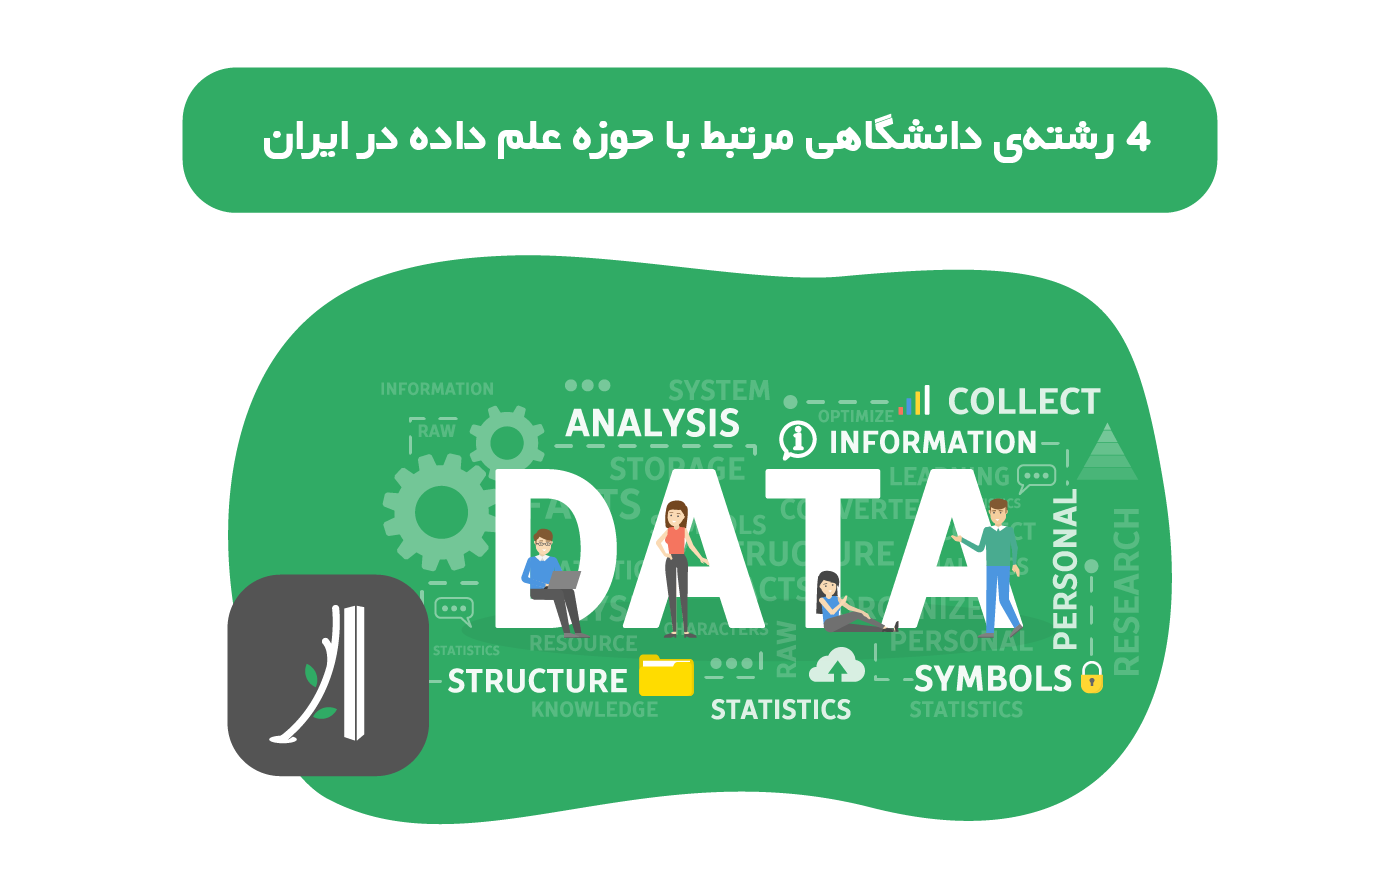 رشته های دانشگاهی مرتبط با علوم داده در ایران